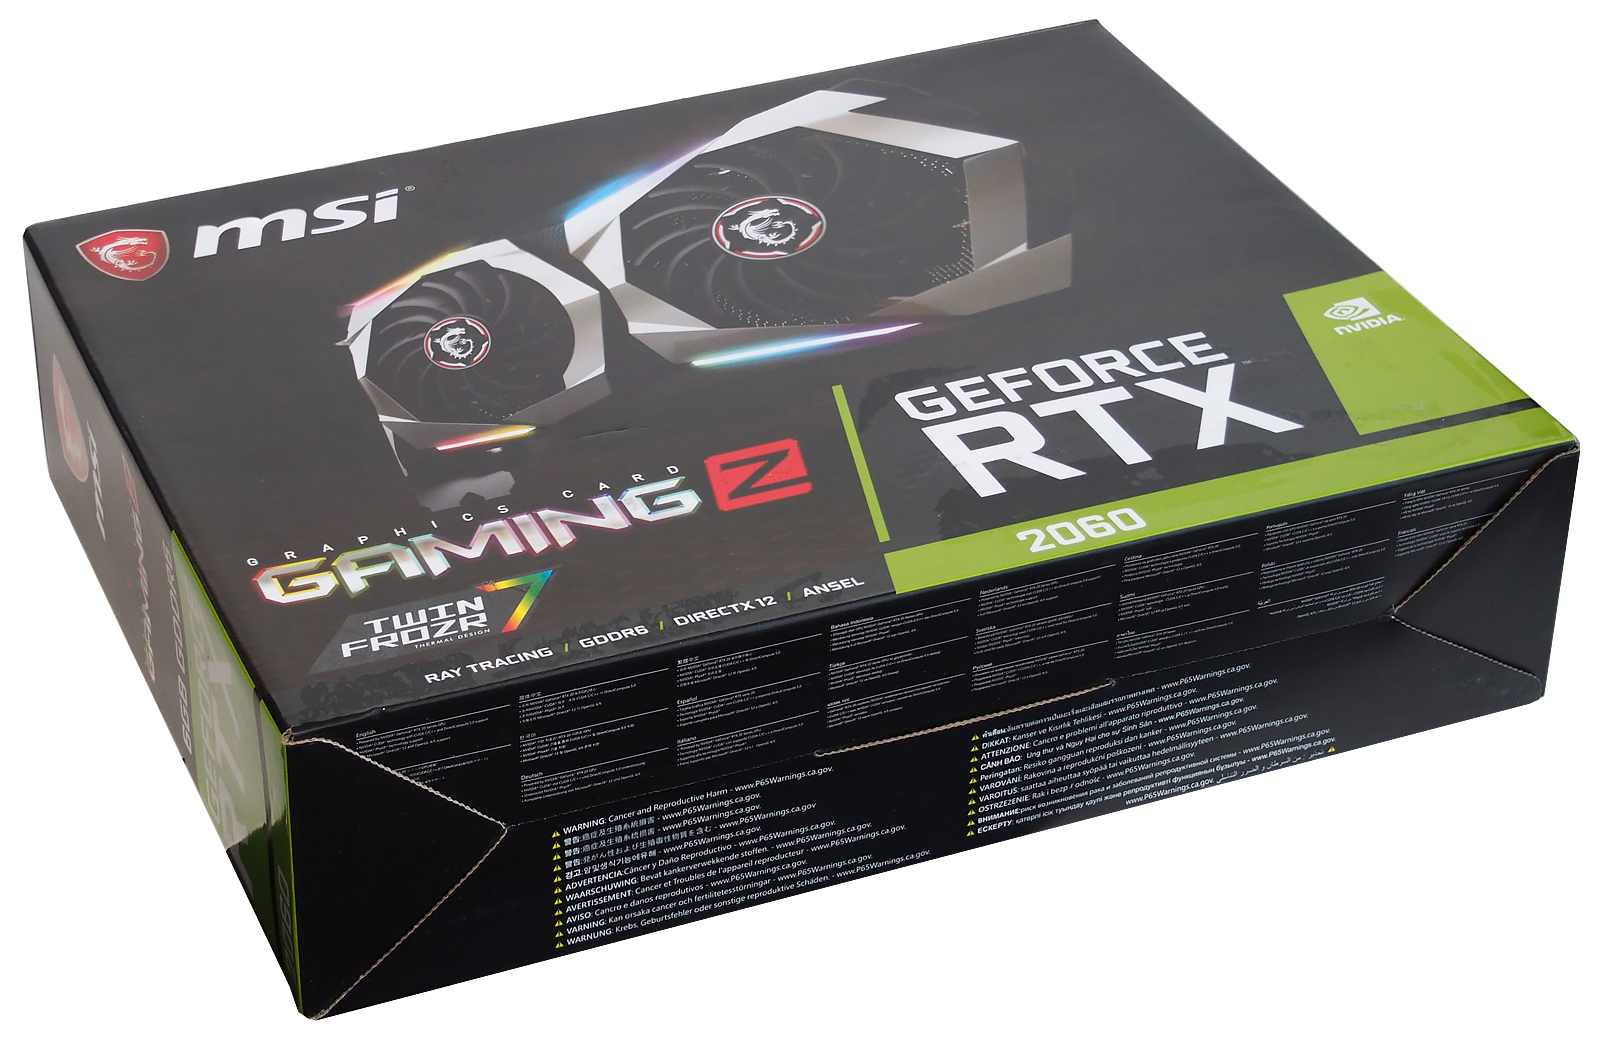 Купить rtx бу. GEFORCE RTX 2060 Gaming z 6g. RTX 2060 MSI Gaming z. Коробка от MSI RTX 2060. Видеокарта РТХ 2060 МСИ упаковка.